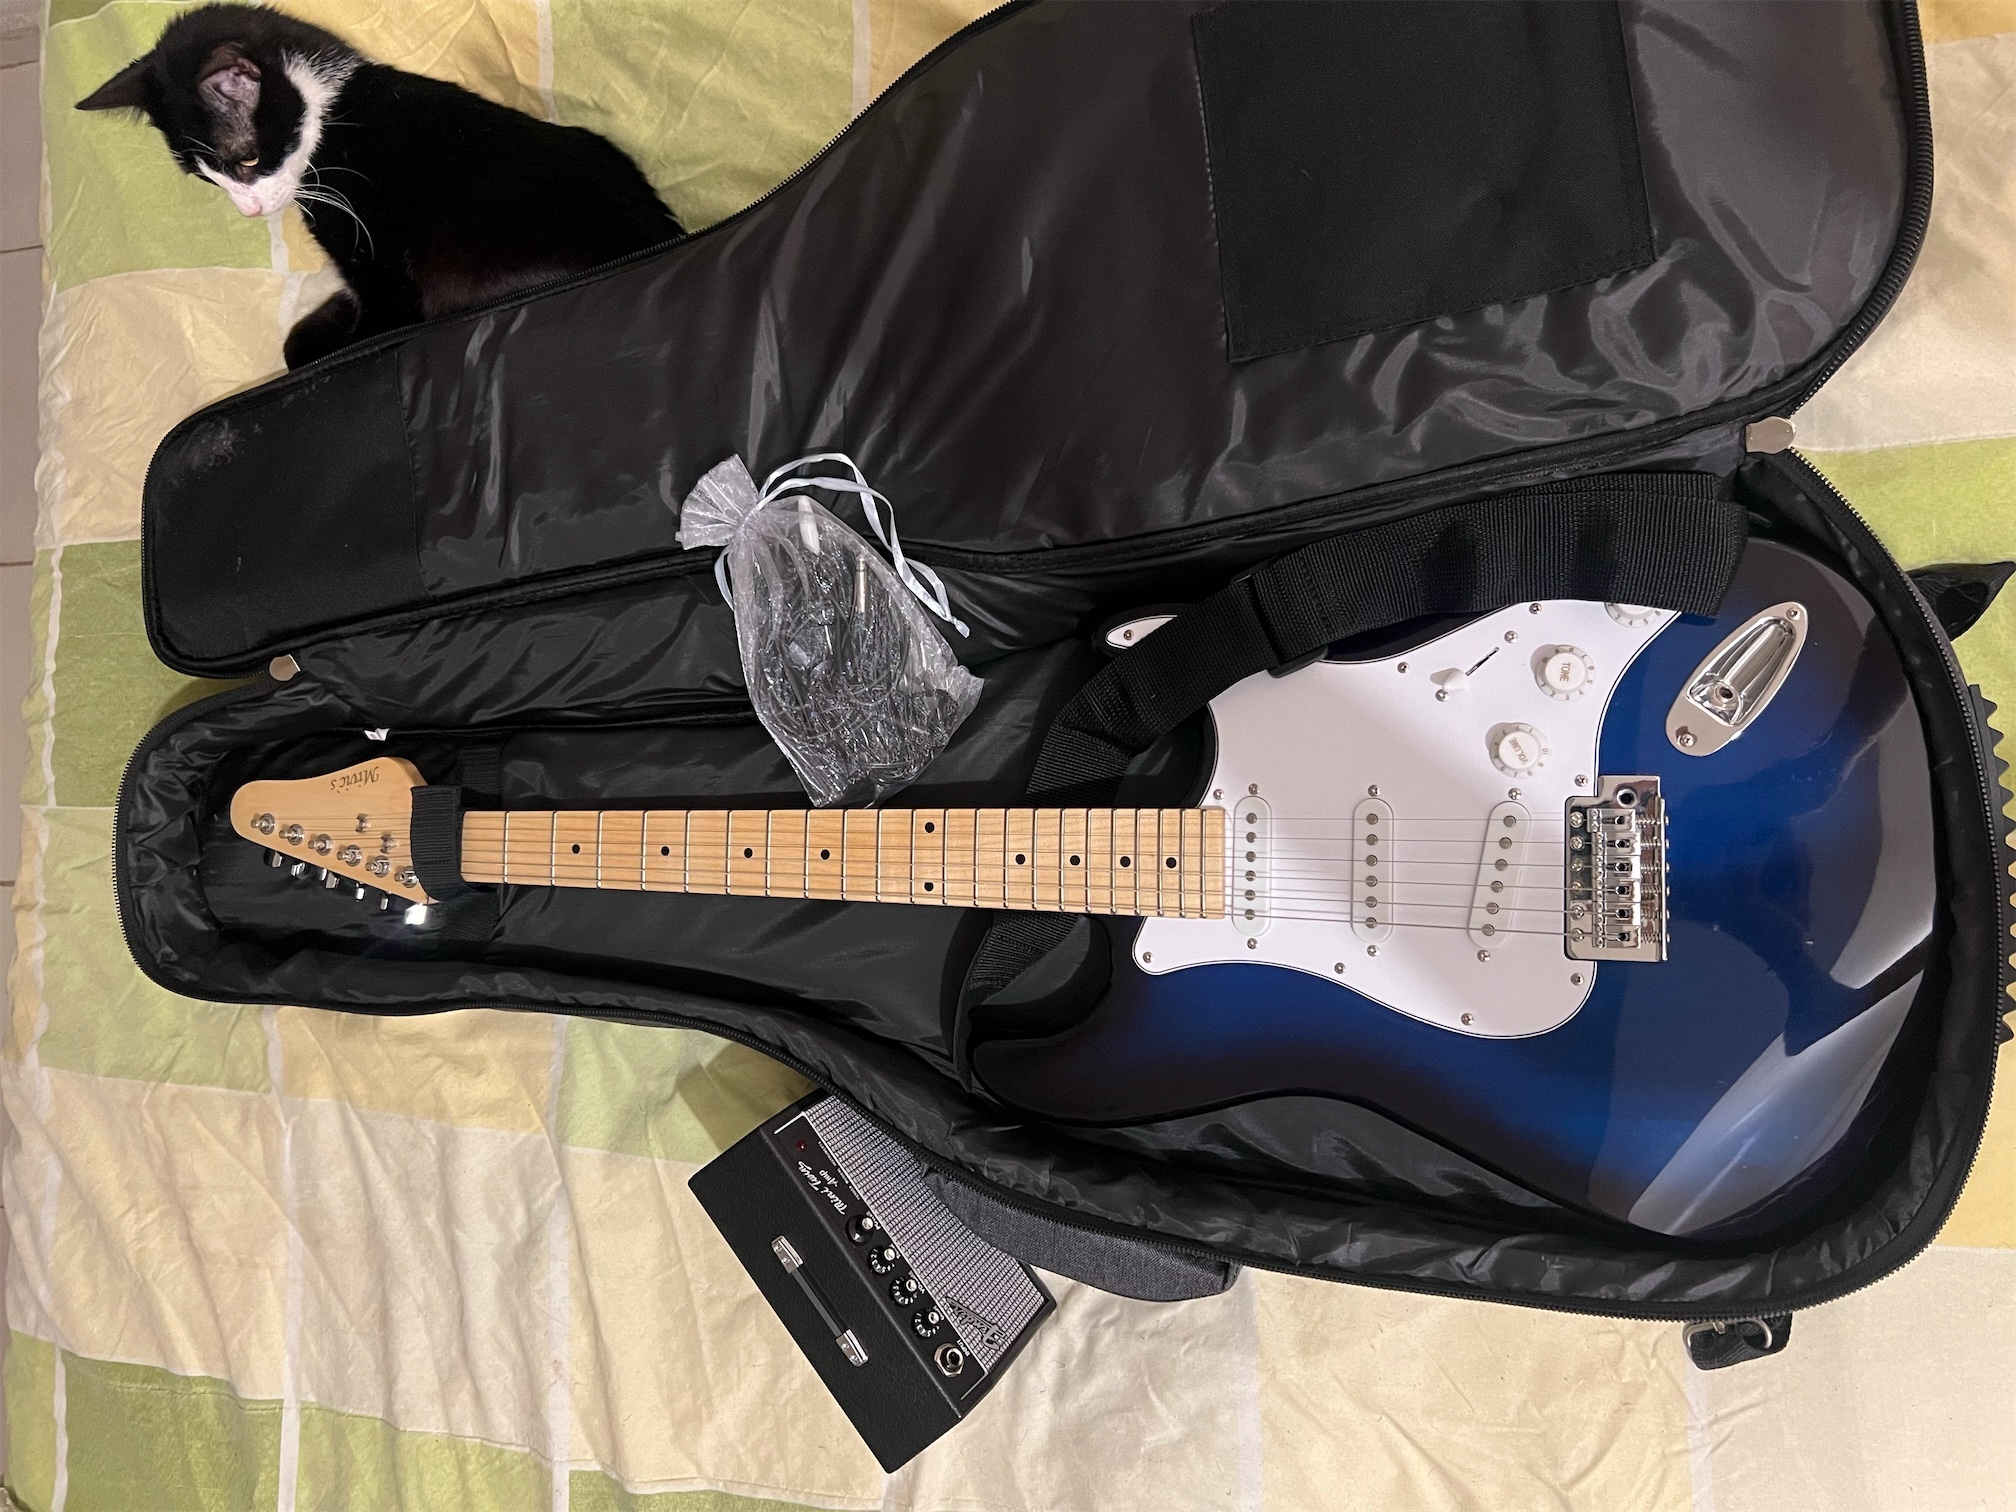 instrumentos musicales - Vendo Guitarra Eléctrica tipo Stratocaster con amplificador marca Fender y Case. 2